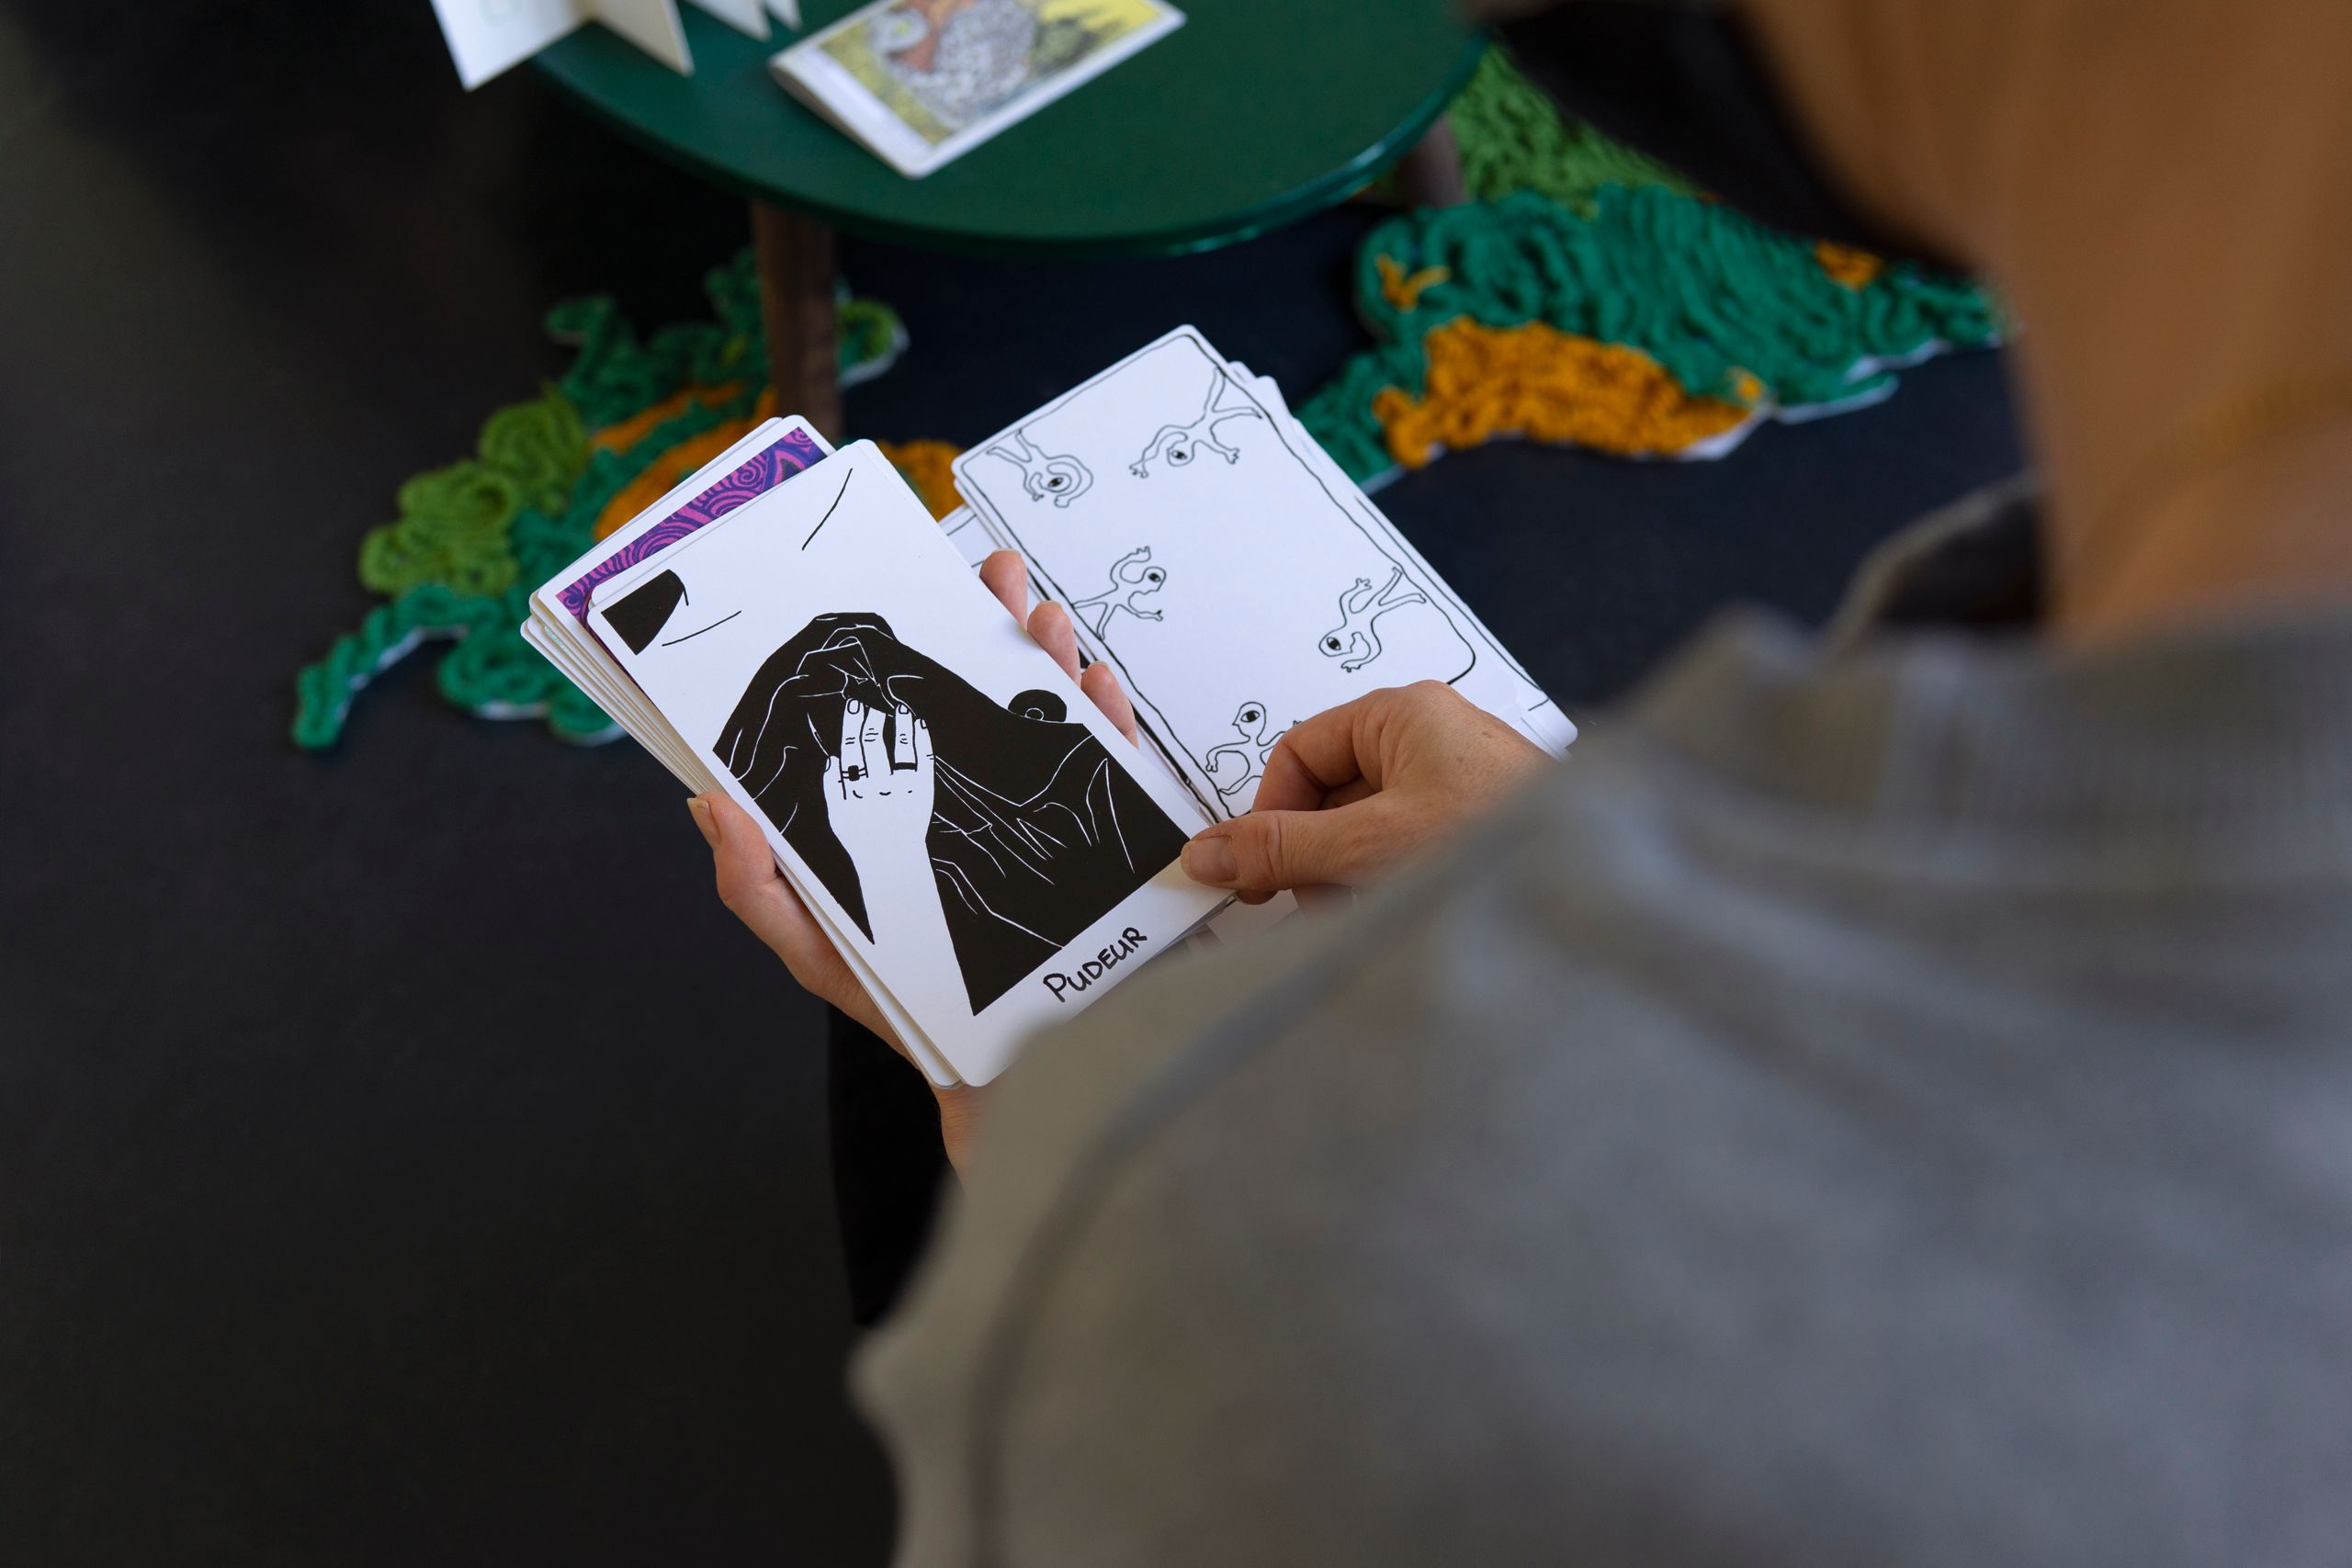 Projet de diplôme master arts visuels option trans oryana nurock, cartes comme outils de communication dans un groupe afin de débloquer des situations.